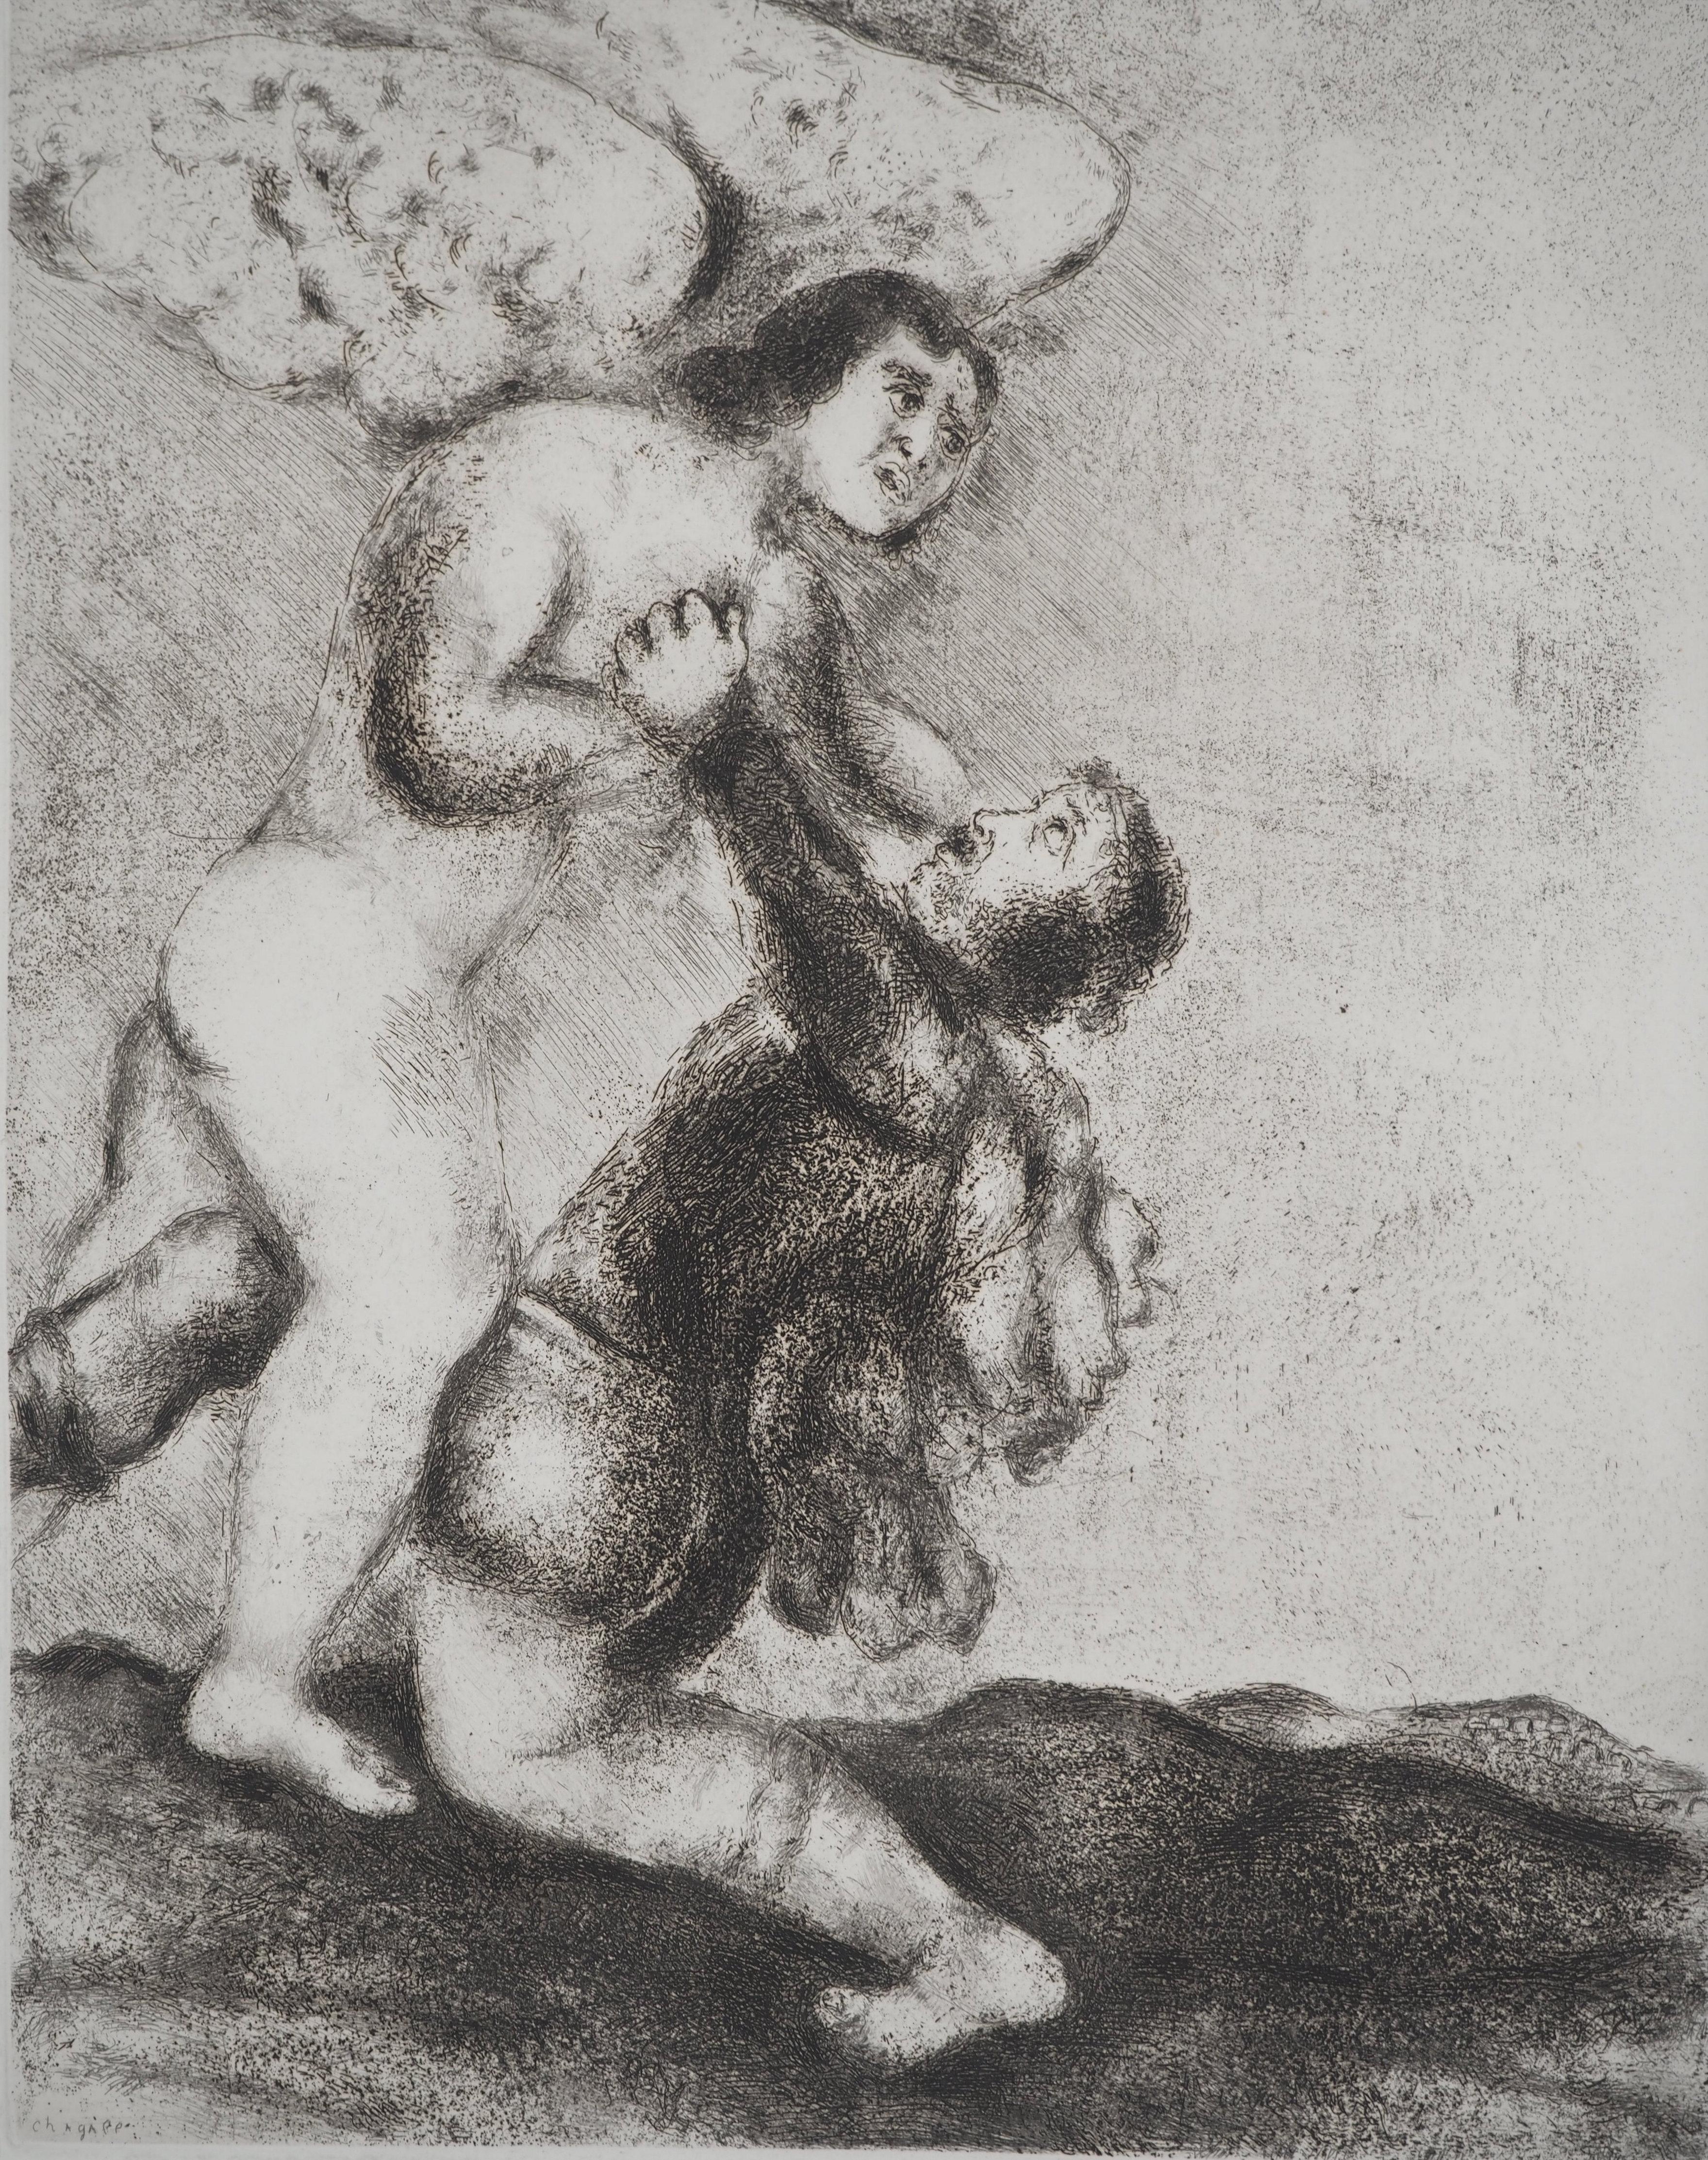 Marc Chagall (1887-1958)
Bible : La lutte avec l'ange, 1939

Gravure originale
Signature imprimée dans la plaque
Sur vélin de Montval, 44 x 33.5 cm (c. 17.3 x 13.1 inch)

INFORMATION : Publié par Vollard / Tériade en 1956

RÉFÉRENCE : Catalogue